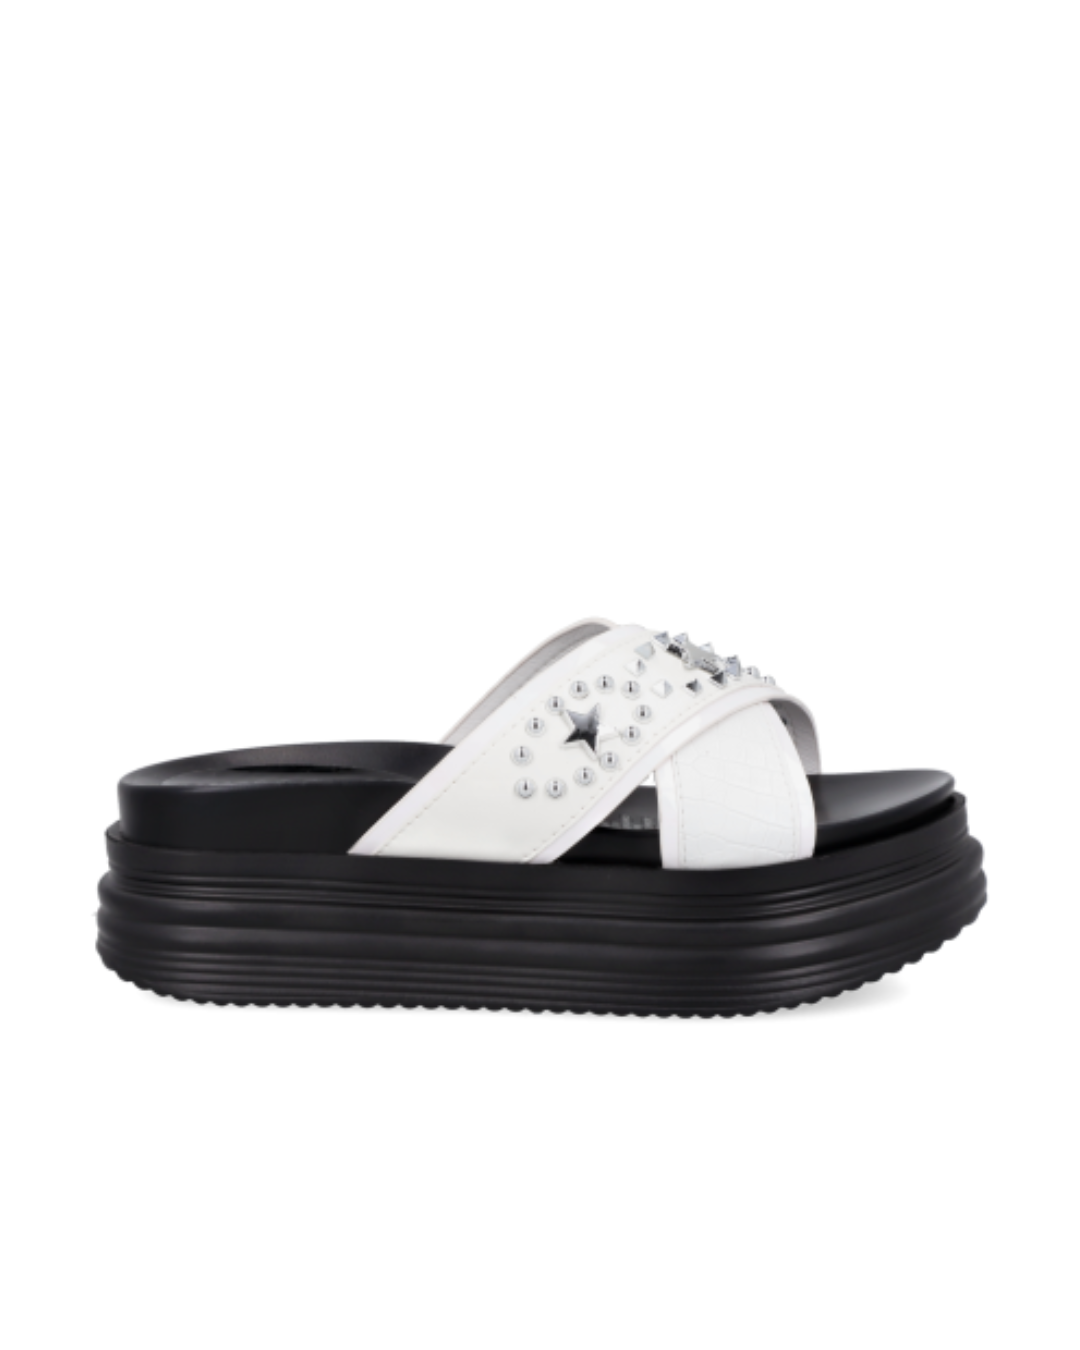 Cadiz white - Topshoes